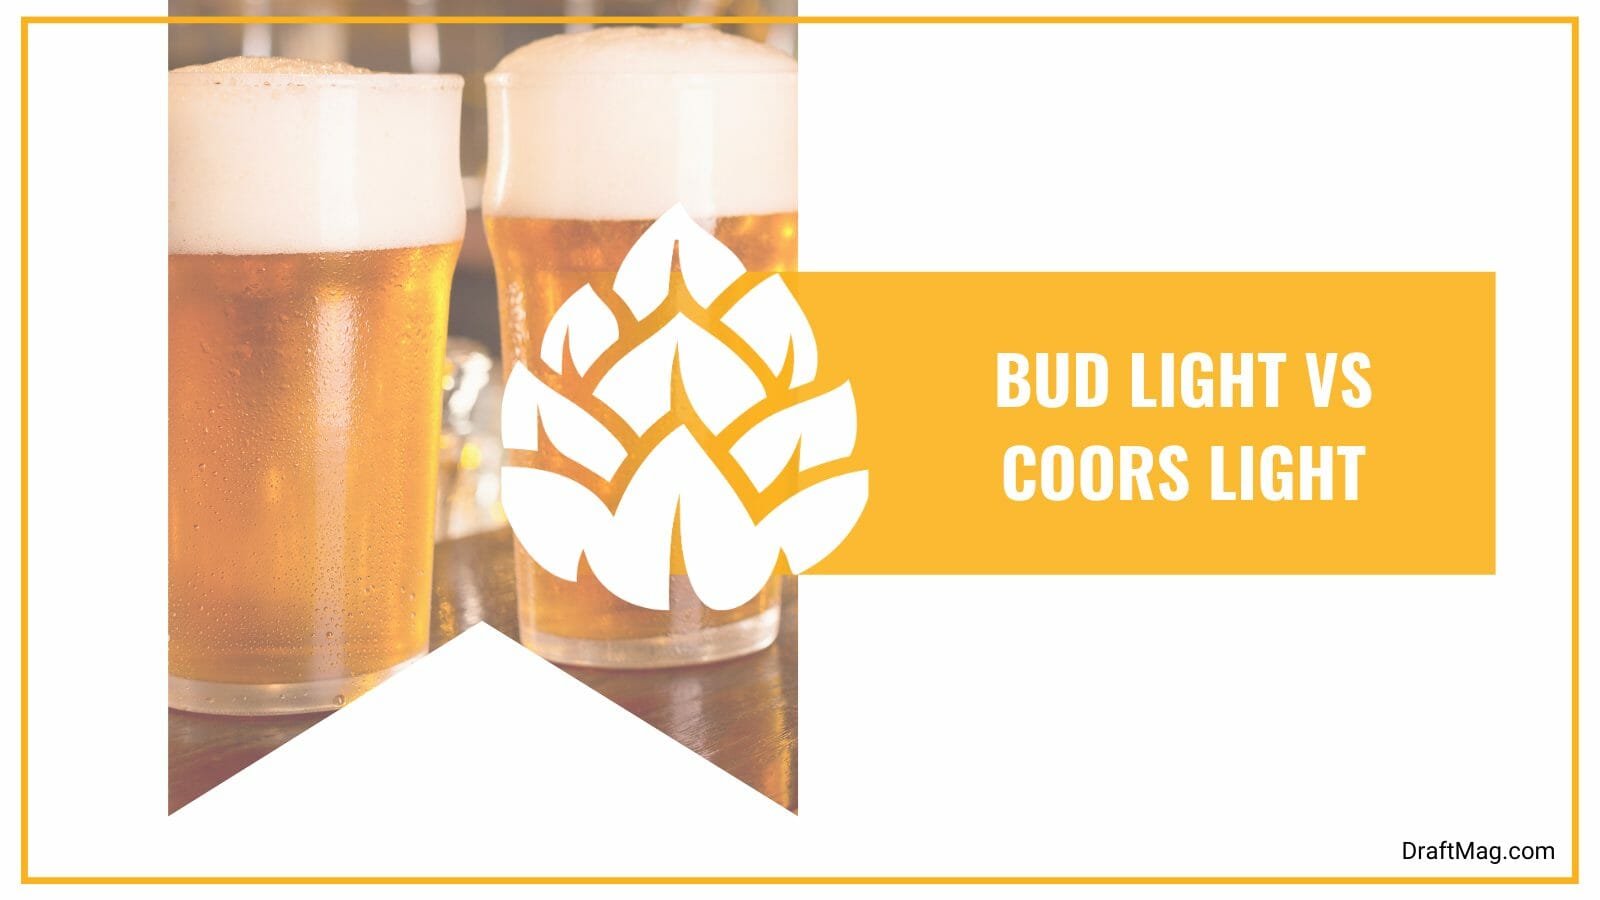 Bud light vs coors light